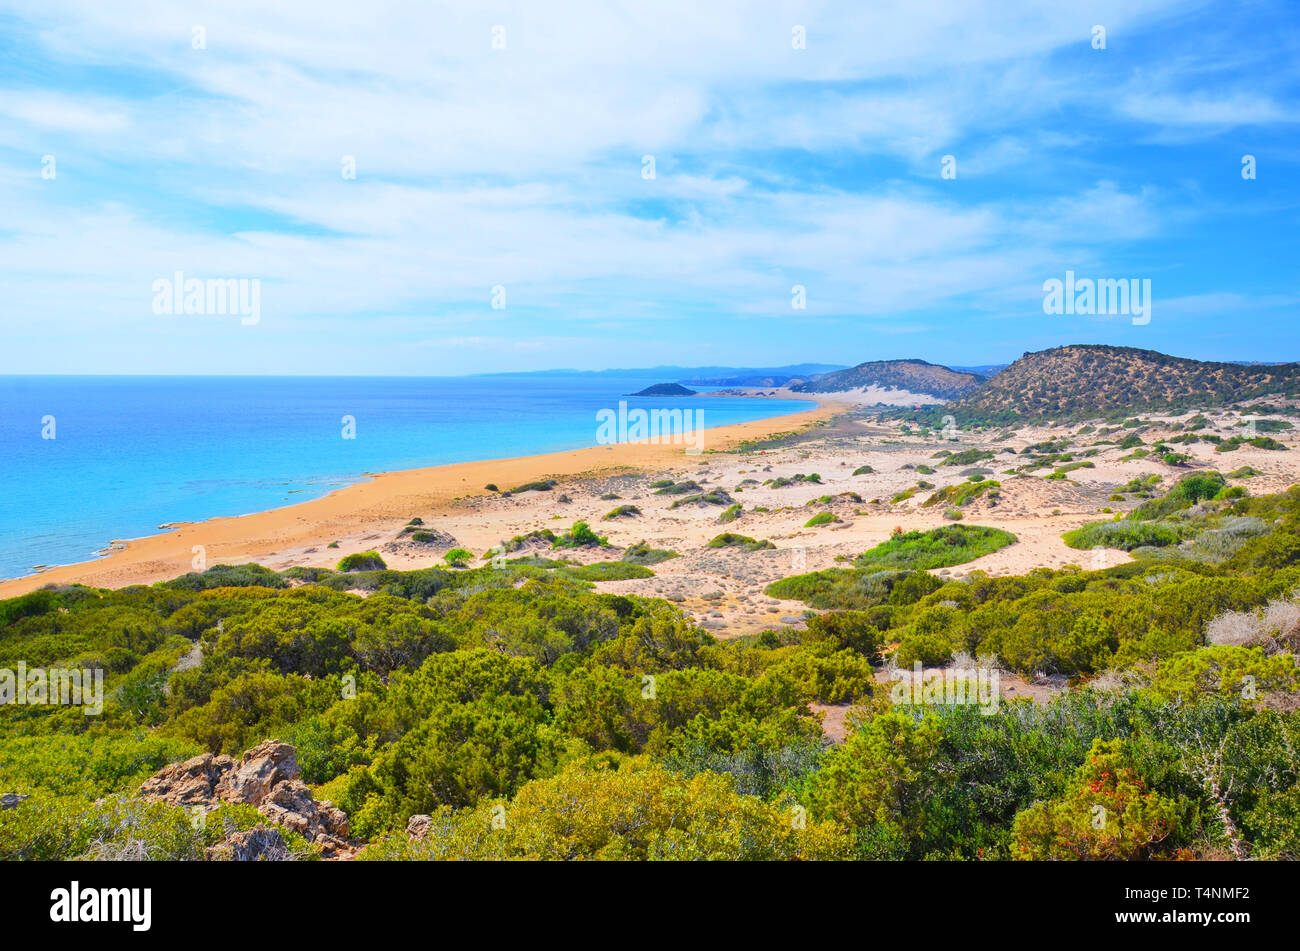 La magnifica vista del mare bellissimo paesaggio nella penisola di Karpas, la parte settentrionale di Cipro. La parte turca di Cipro è un fuori pista di destinazione. Foto Stock